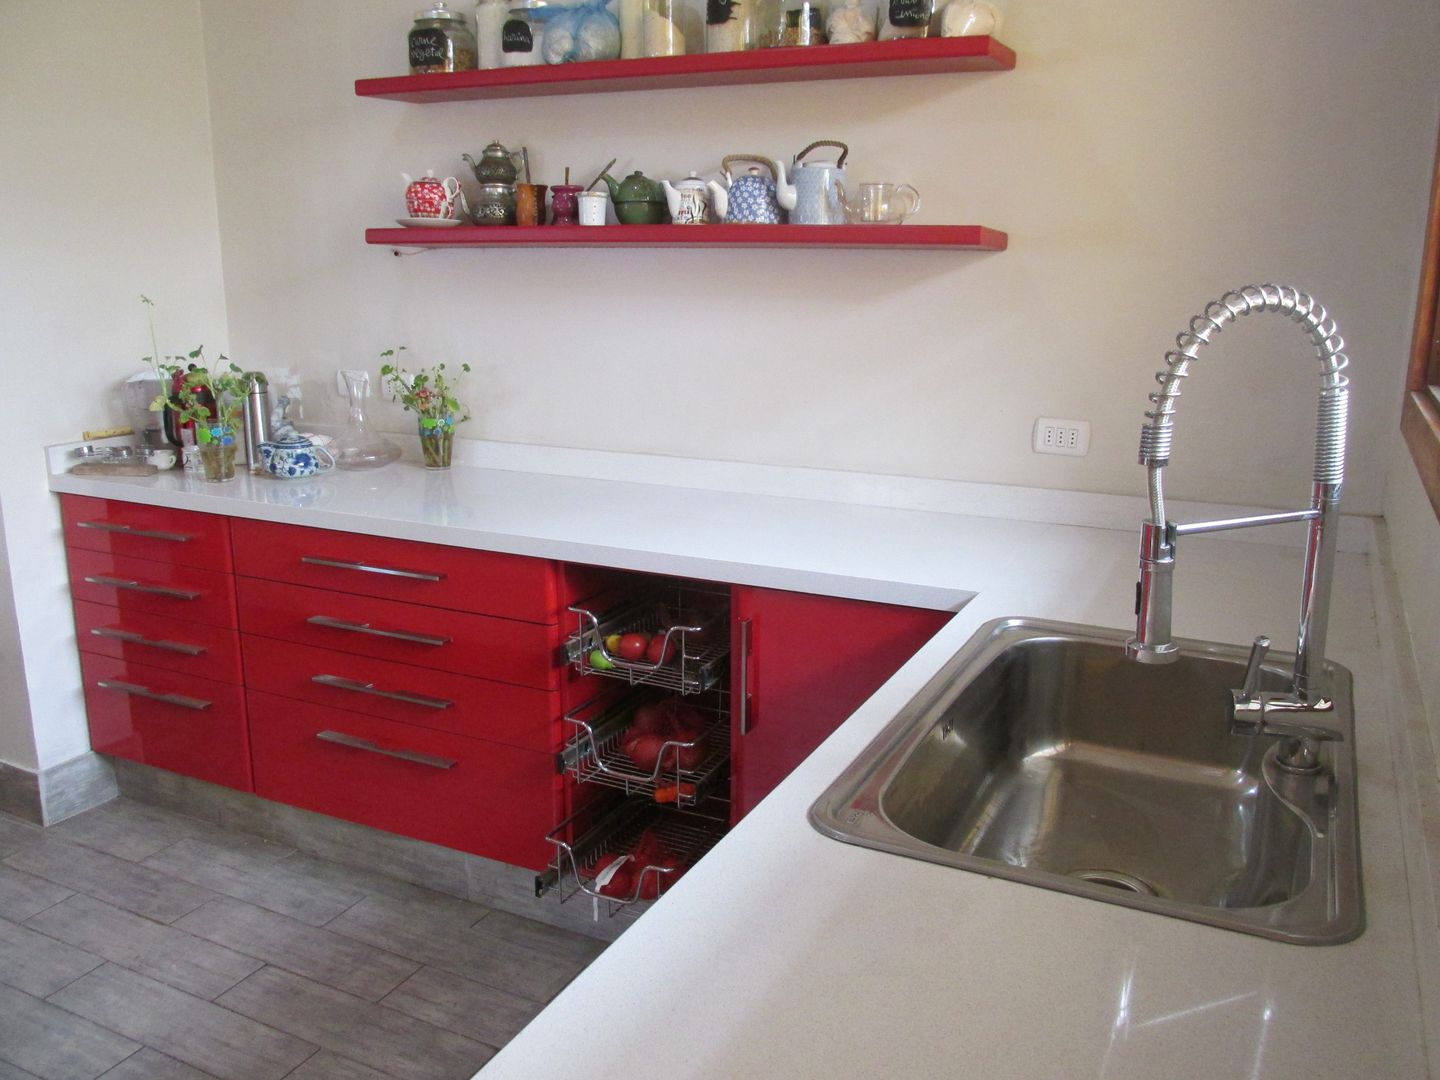 Muebles de cocina laminado rojo con cubierta cuarzo Silestone blanca ABS Diseños & Muebles Cocinas de estilo minimalista Cuarzo gabinetes y muebles de cocina,cubierta Silestone,cocina minimalista,Fregaderos y grifería